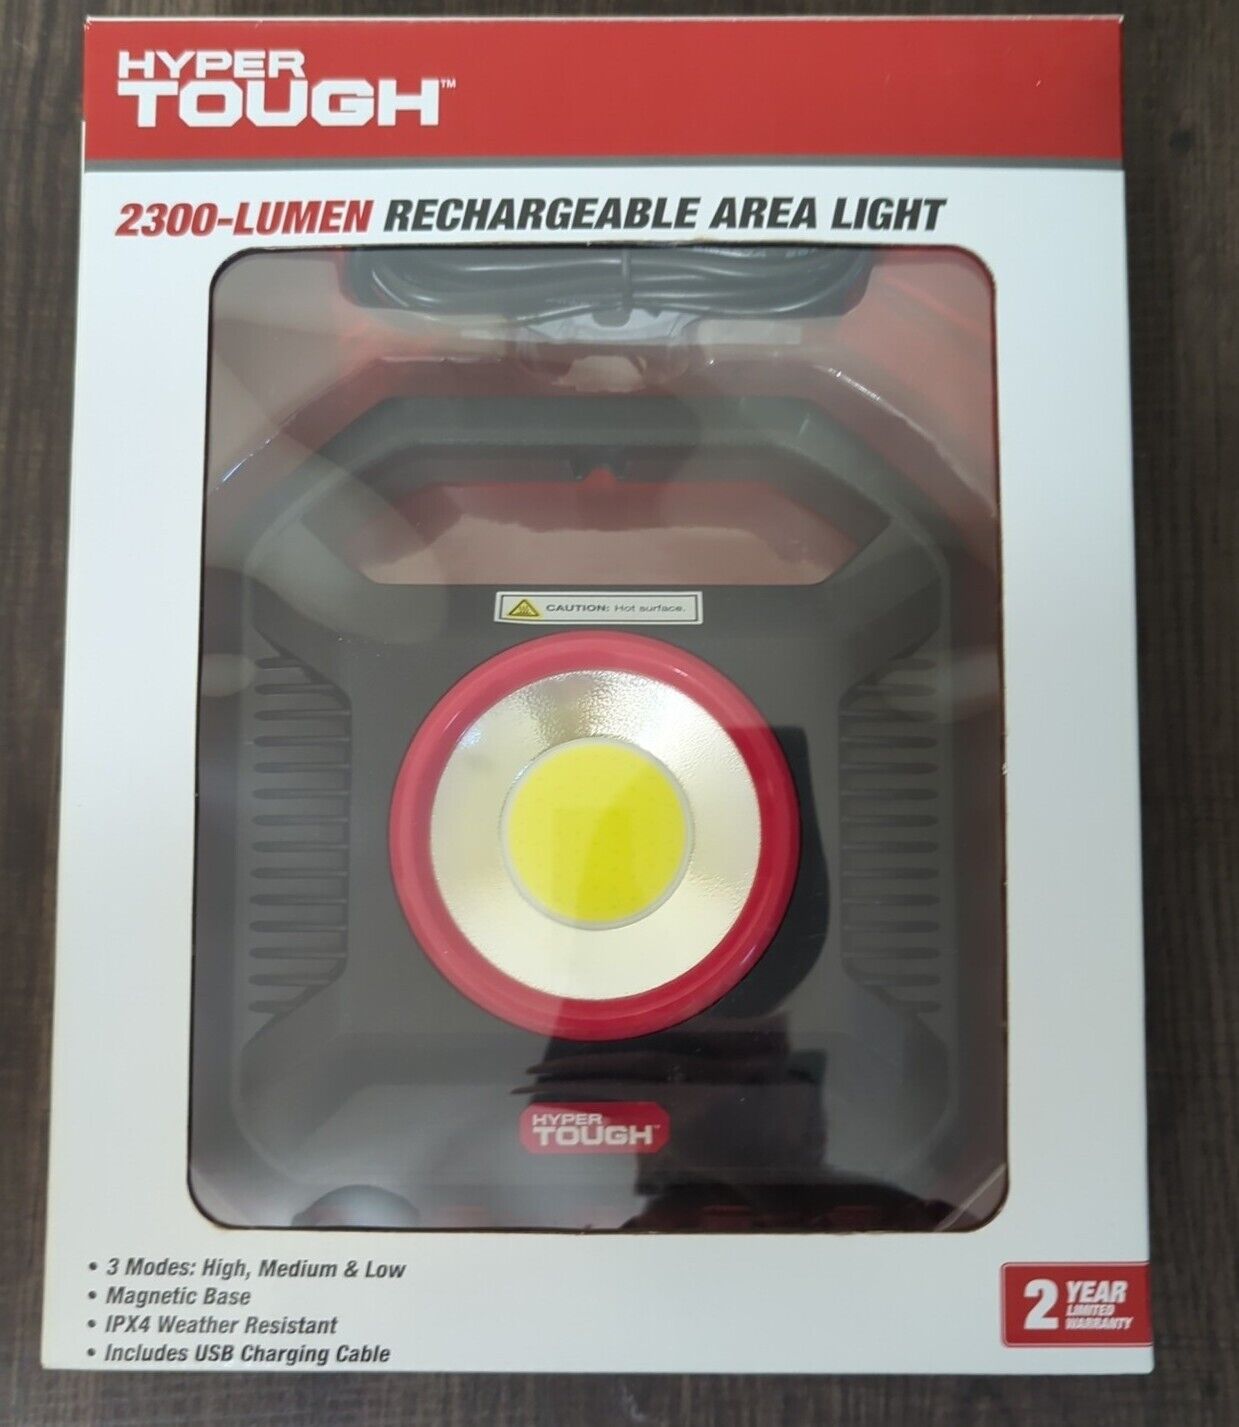 HYPER TOUGH 2300-Lumen Rechargeable LED Area Light Portable Magnetic USB 3 Modes